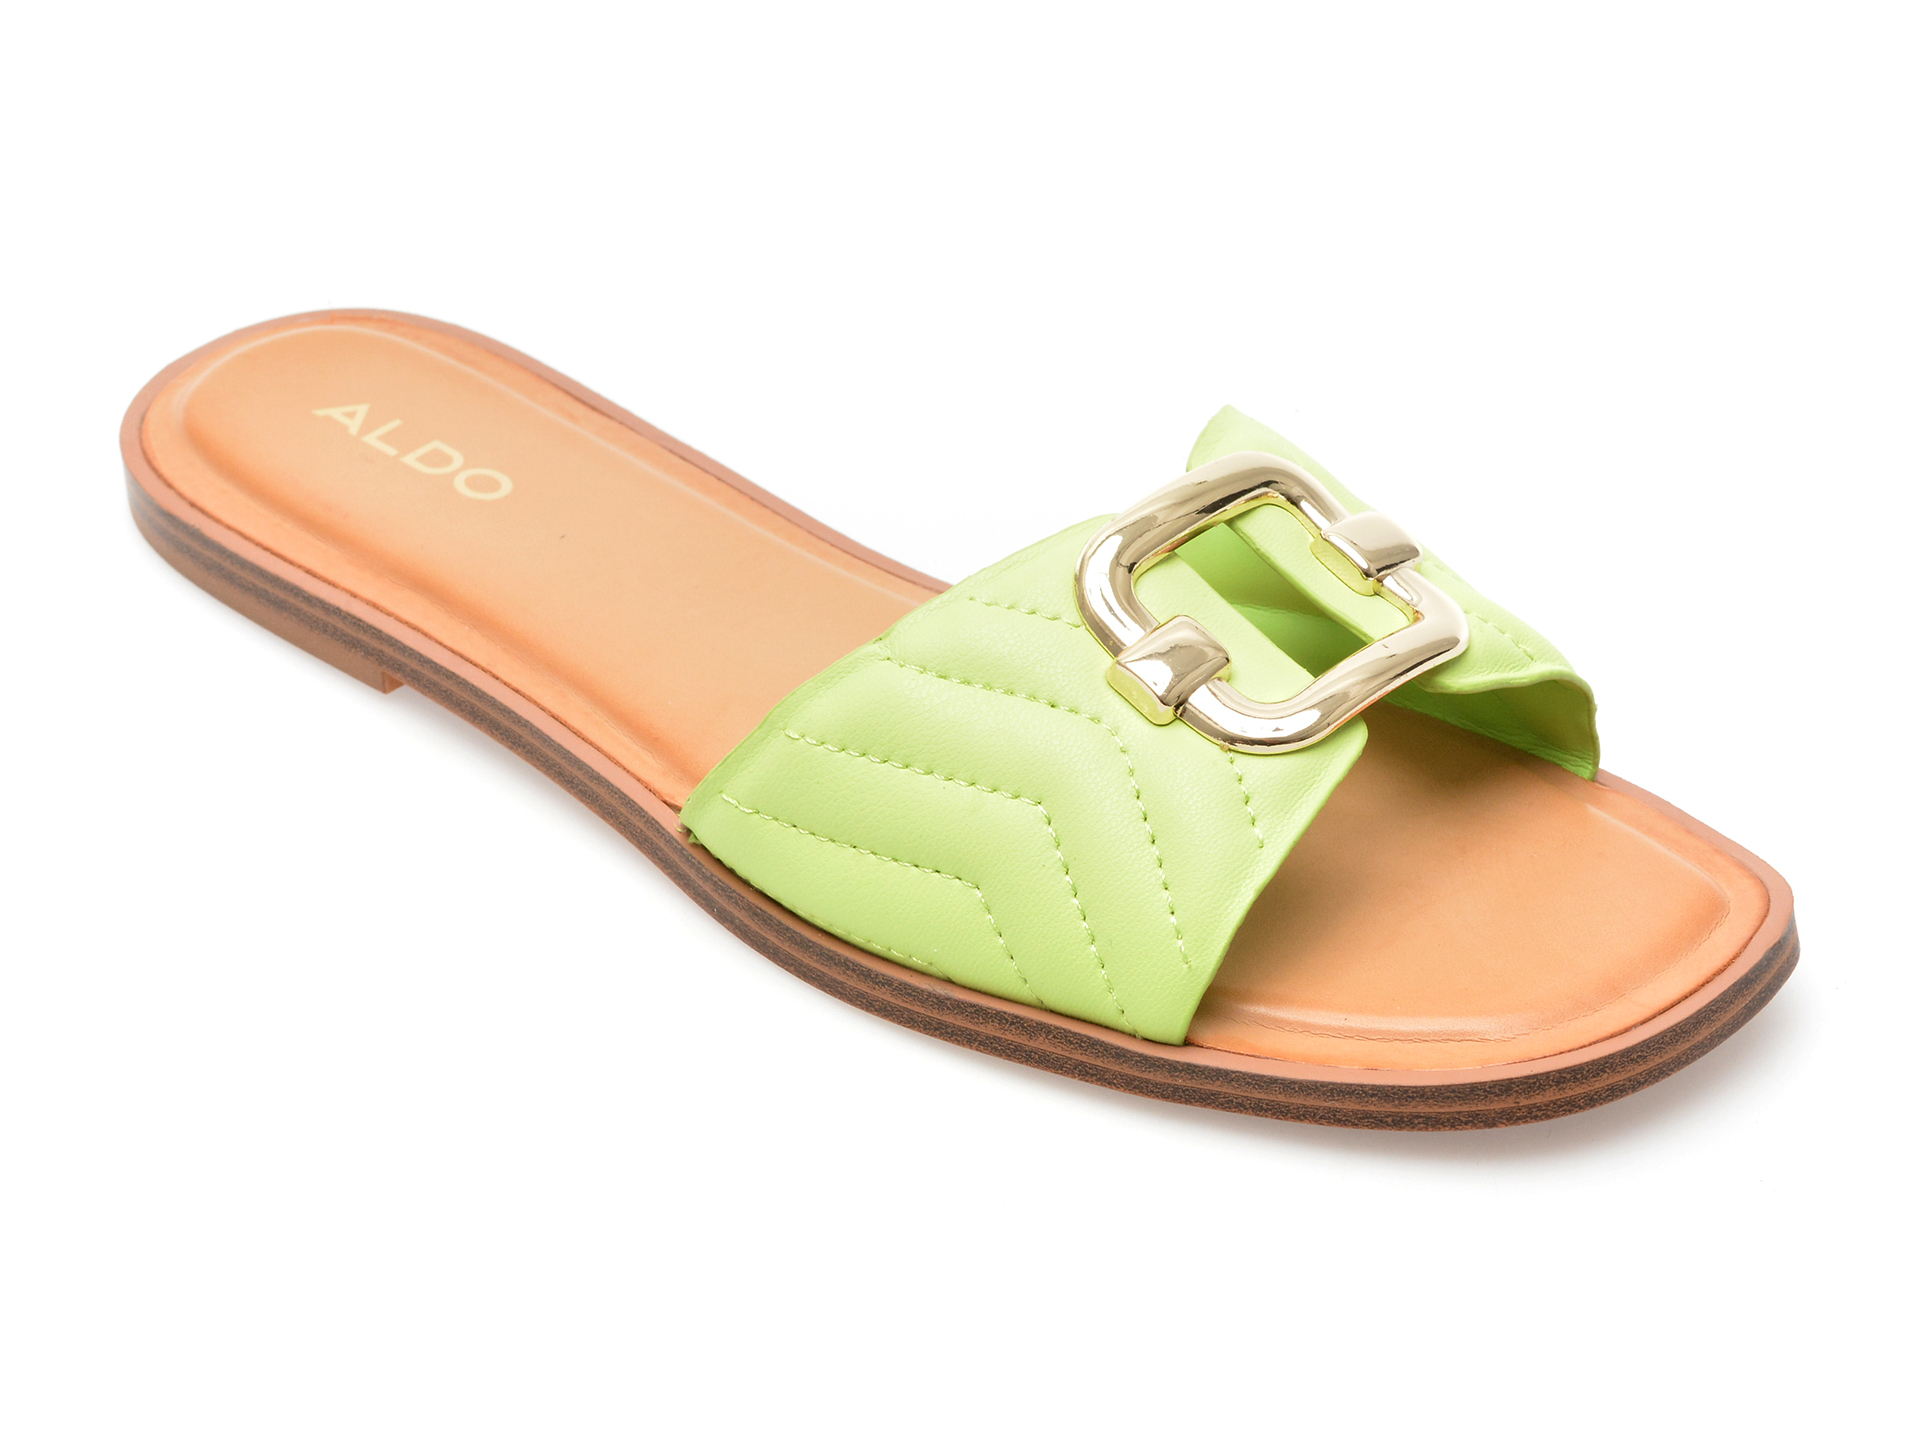 Papuci ALDO verzi, QELAJAR330, din piele ecologica